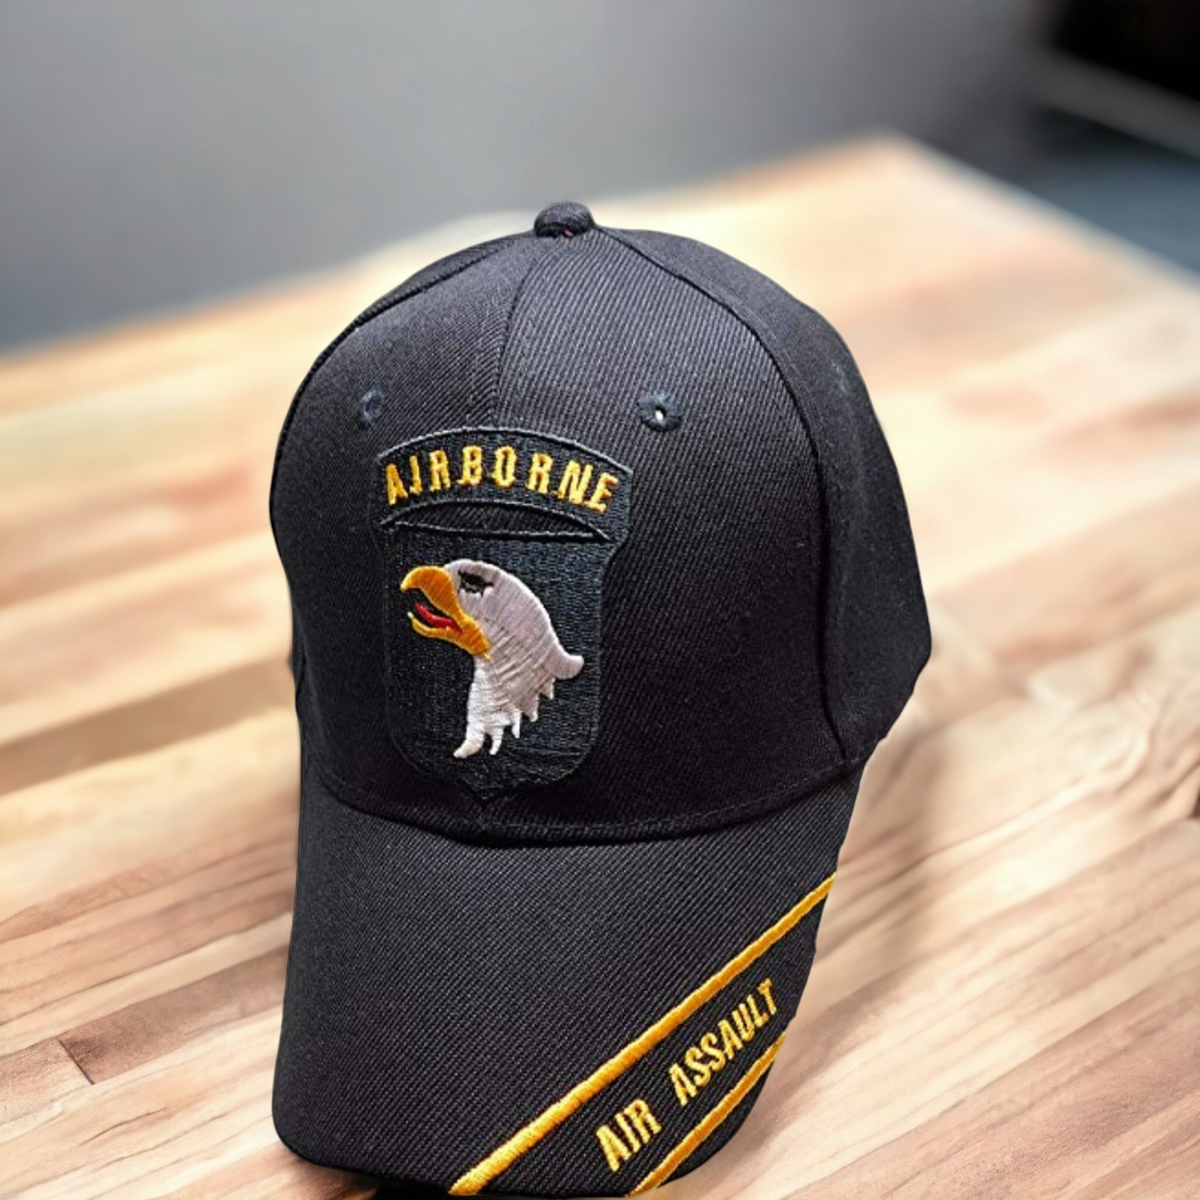 101st Airborne Hat